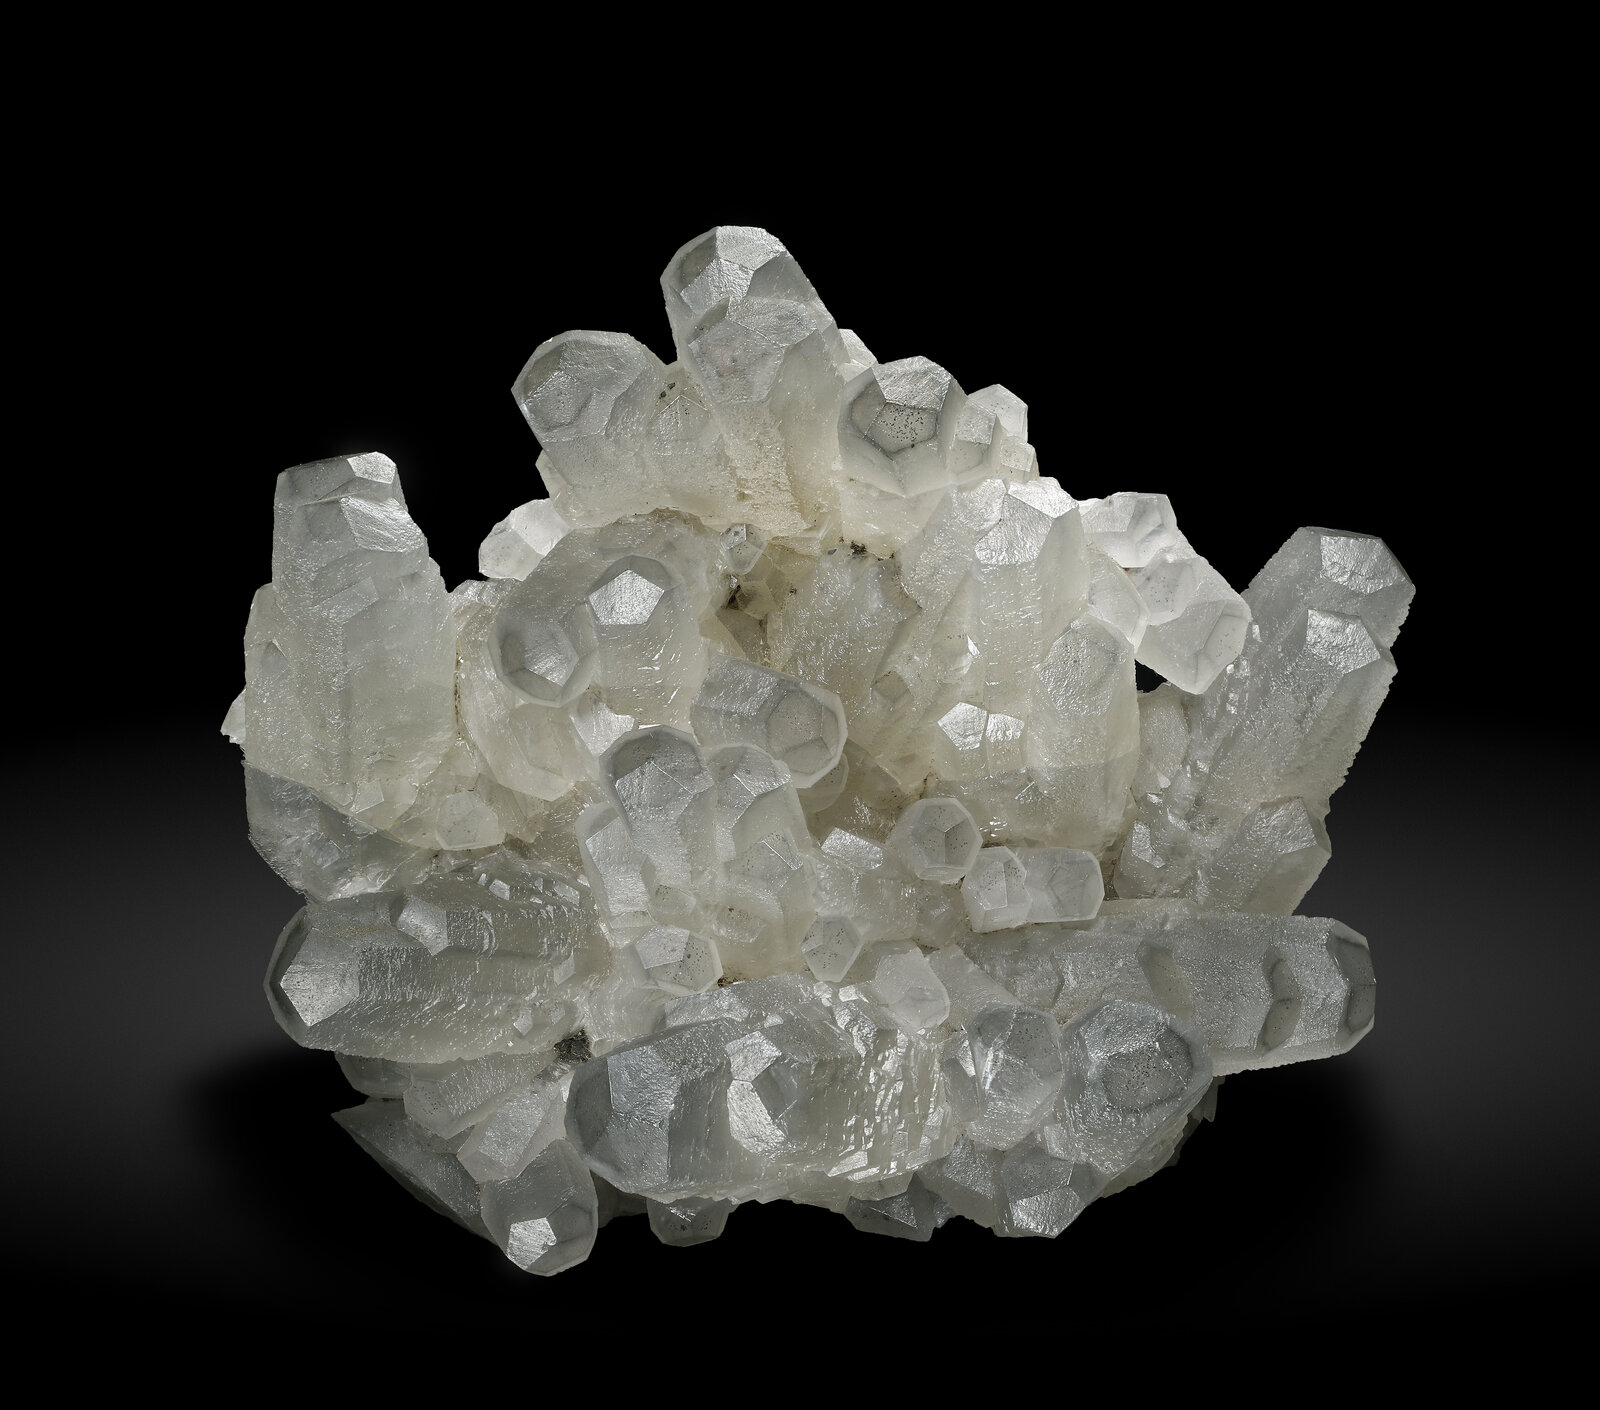 specimens/s_imagesAP8/Calcite-JRB30AP8_3119_f.jpg